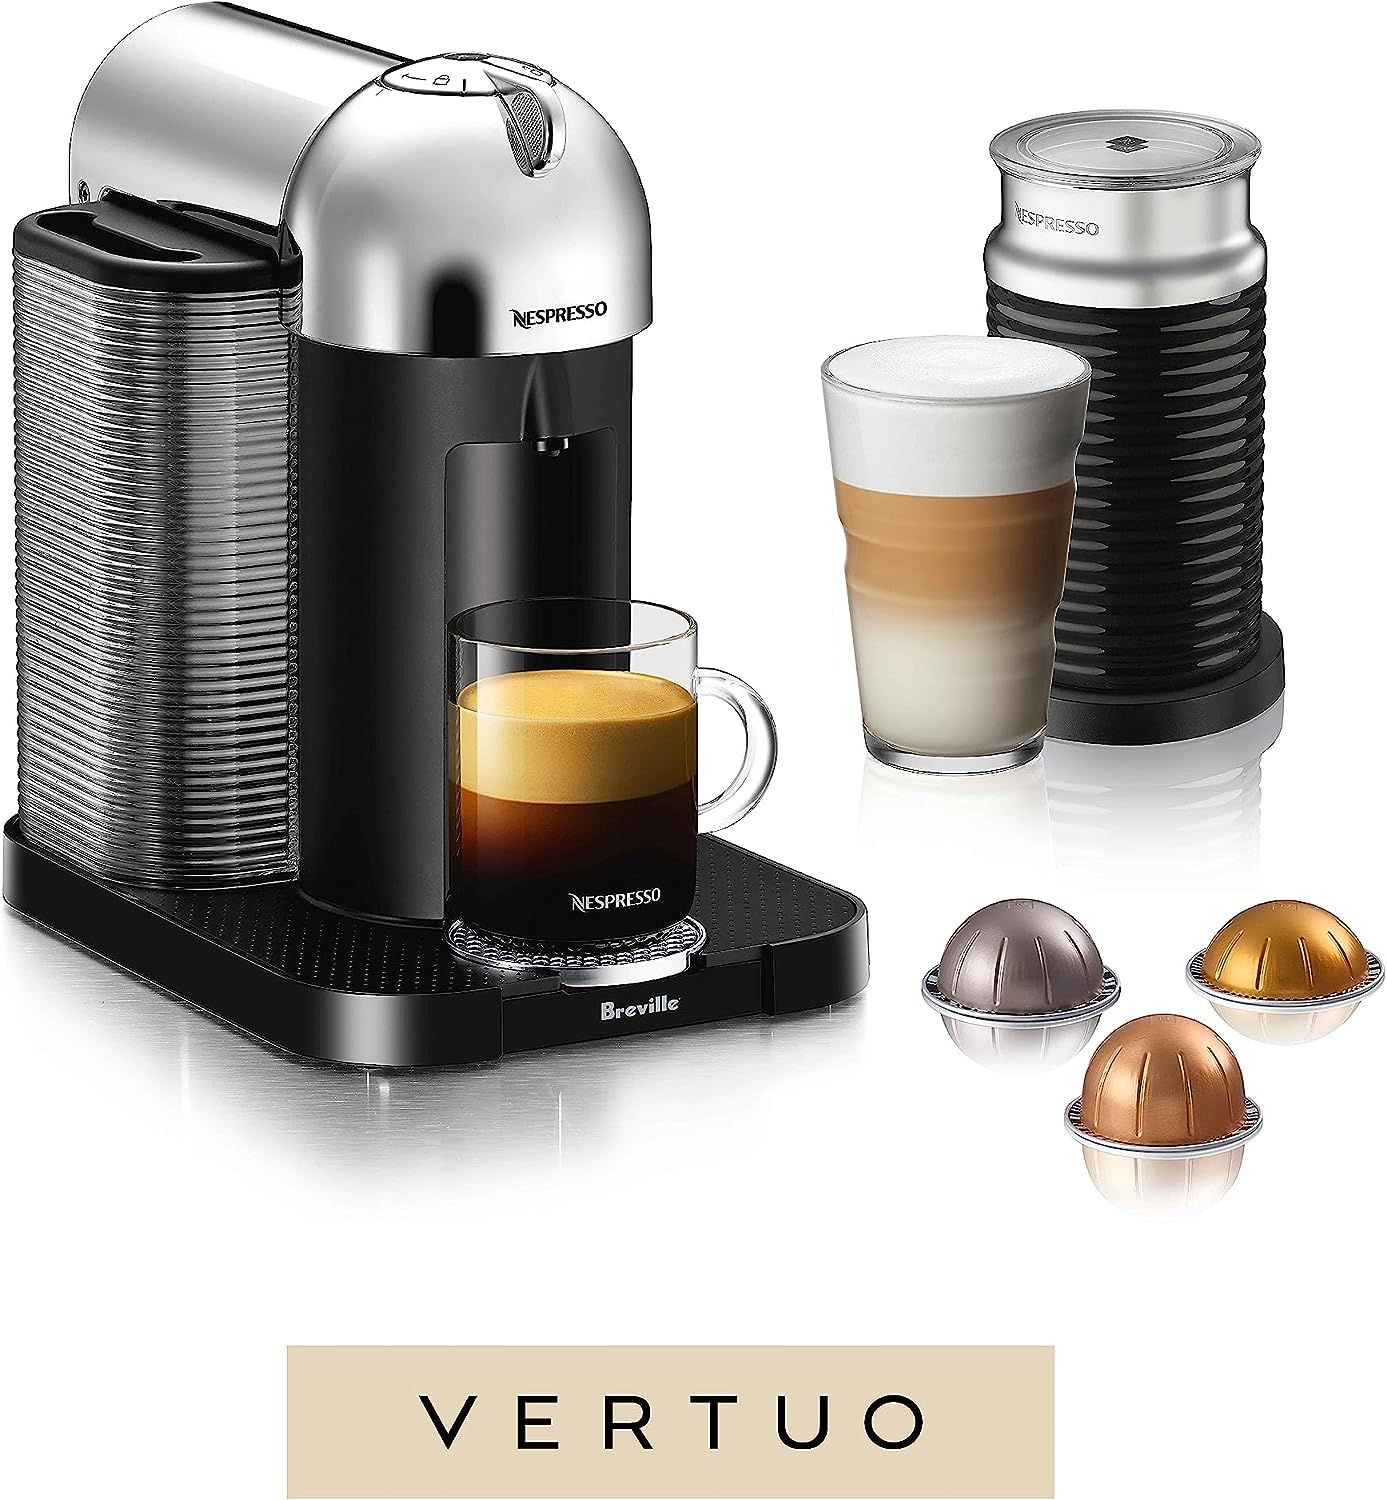 Nespresso Vertuo Coffee and Espresso Machine by Breville, 5 Cups, Chrome | Amazon (US)